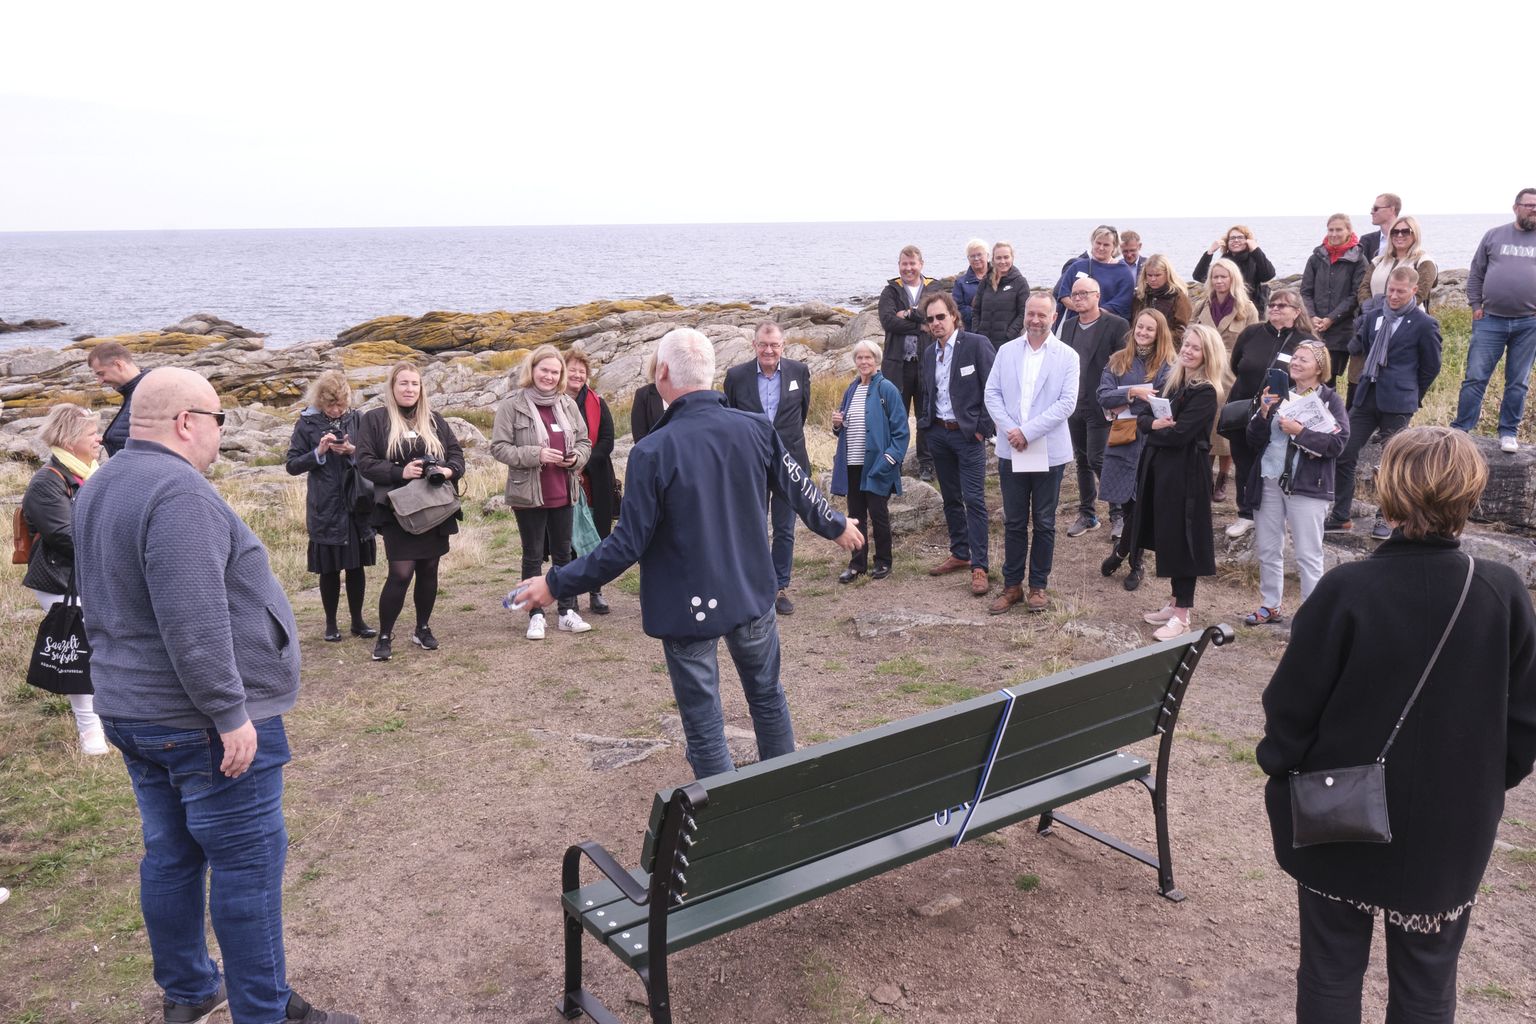 Saaremaal elav bornholmlane Kristian von Wowern (keskel seljaga) nägi võimalust IT-alases koostöös, kus saaks ära kasutada saarlaste oskusi.